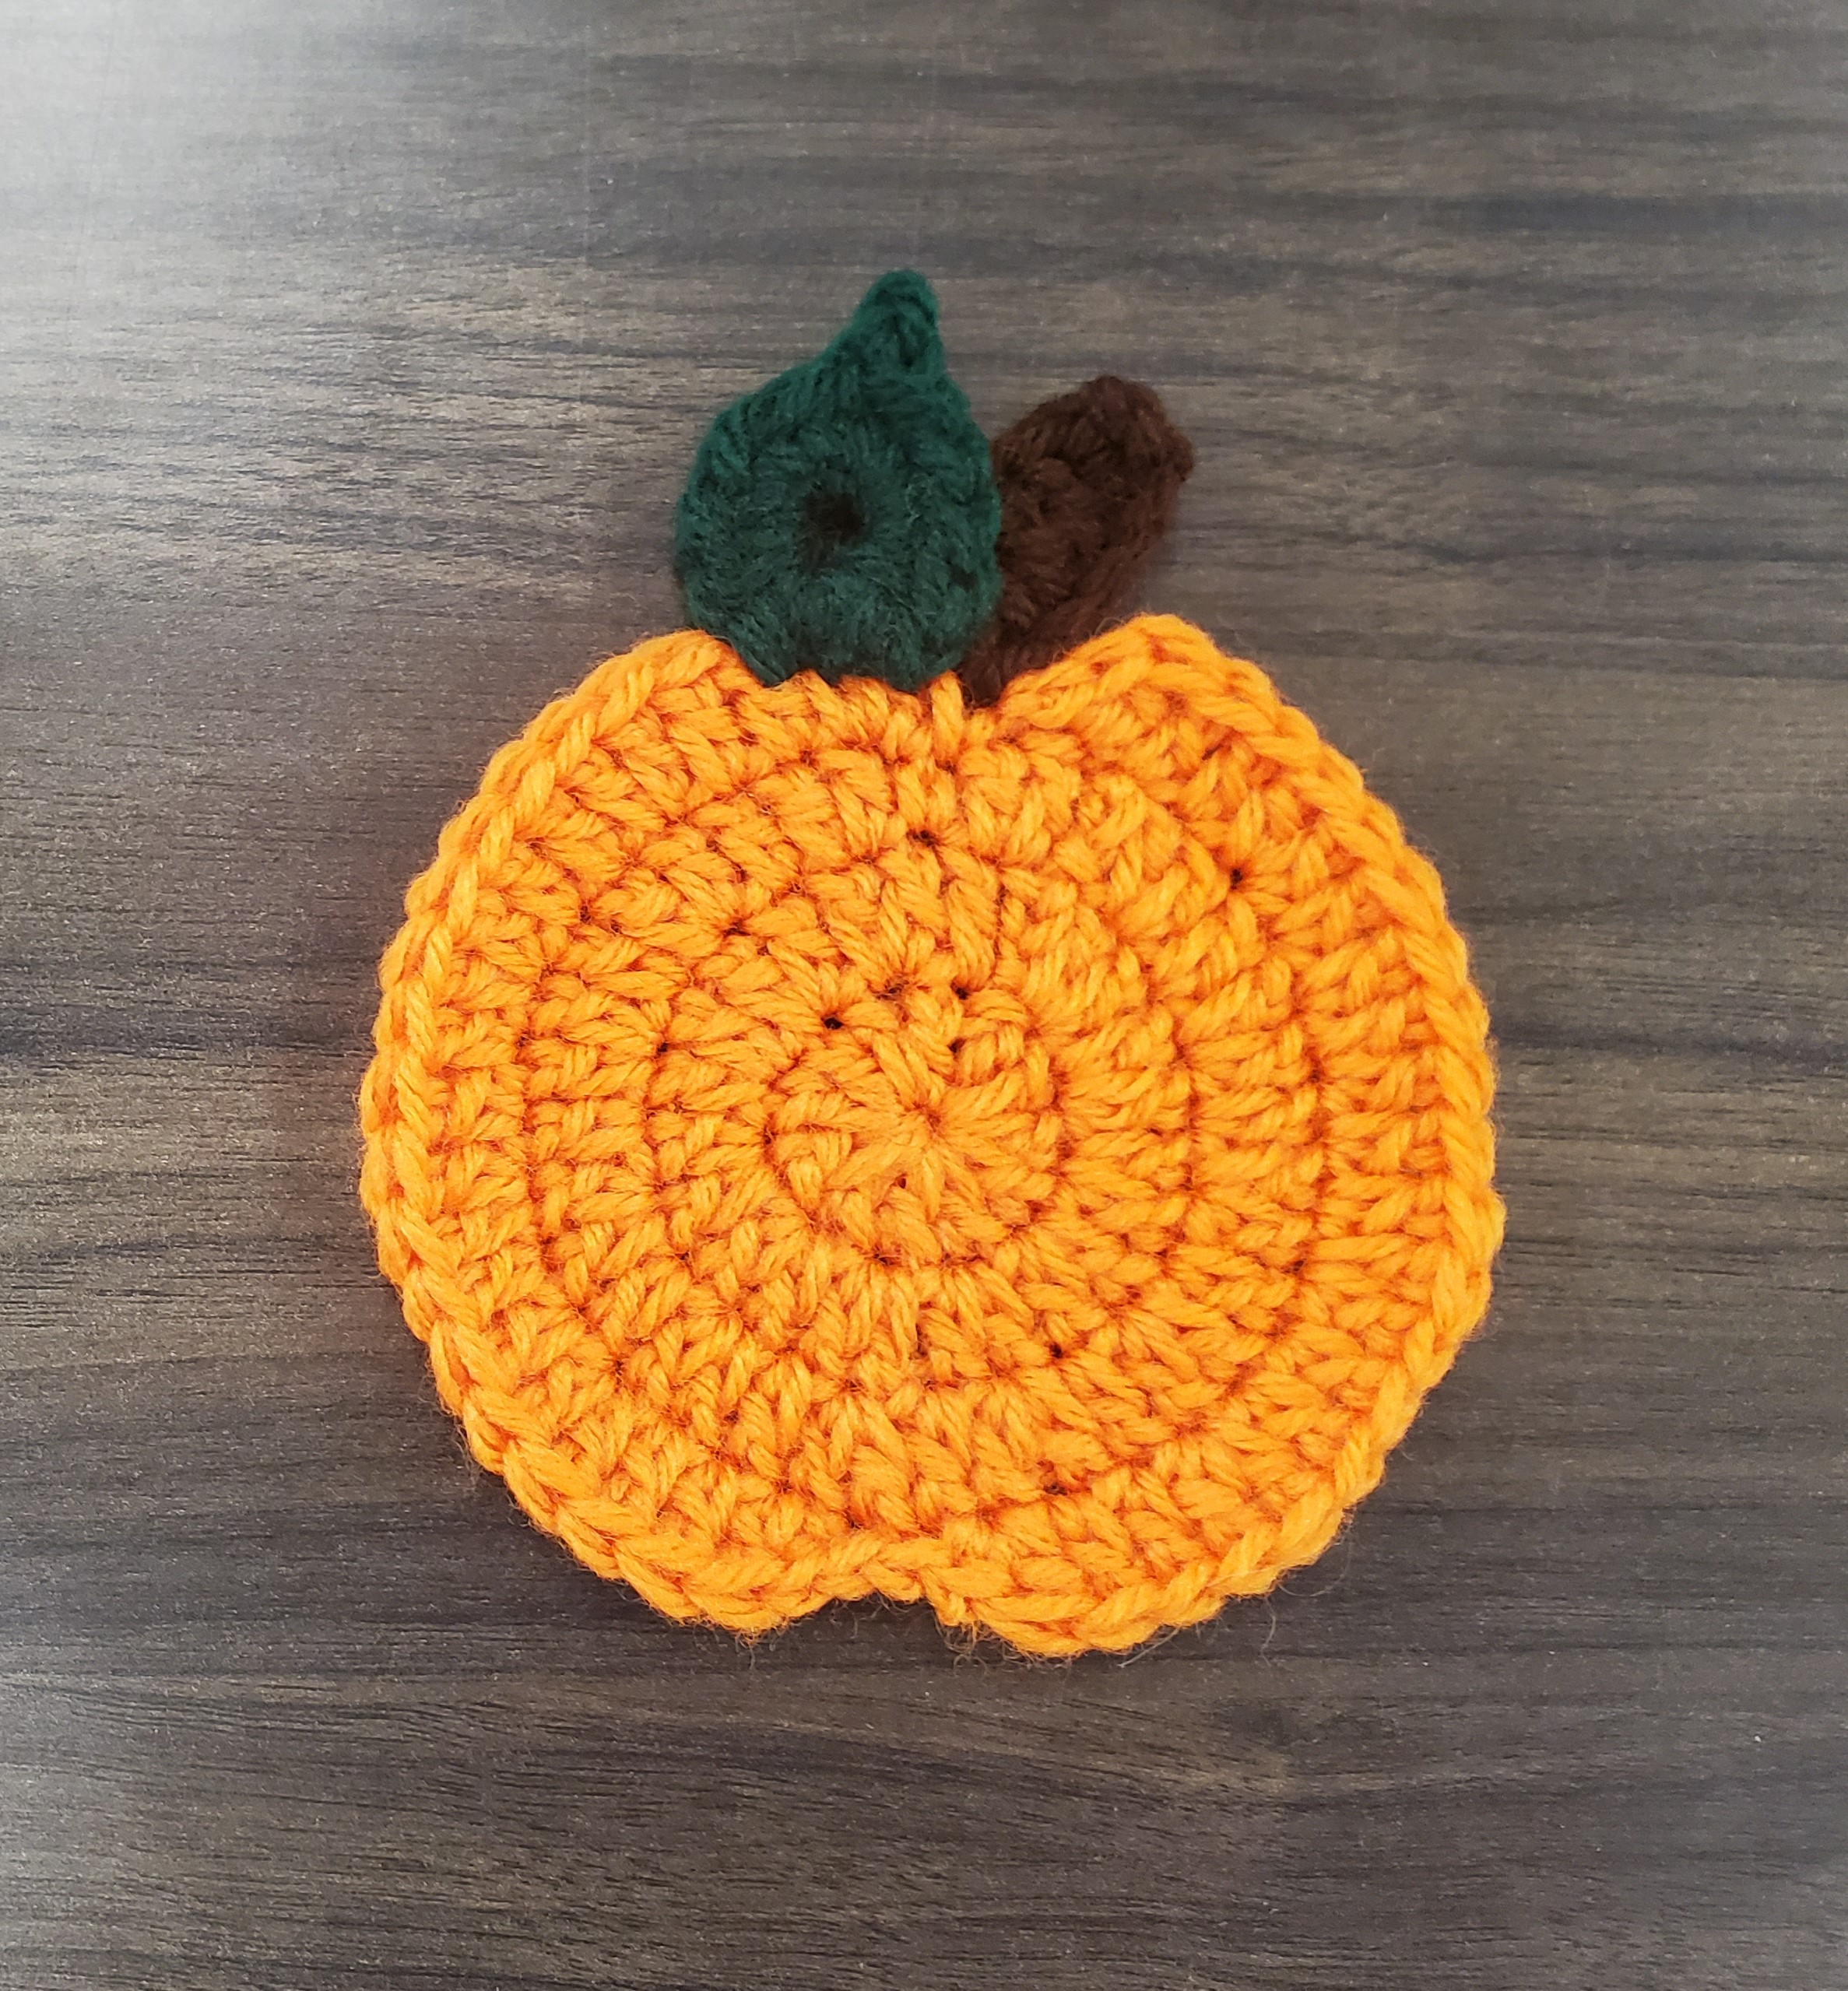 crochet coaster made to look like a pumpkin